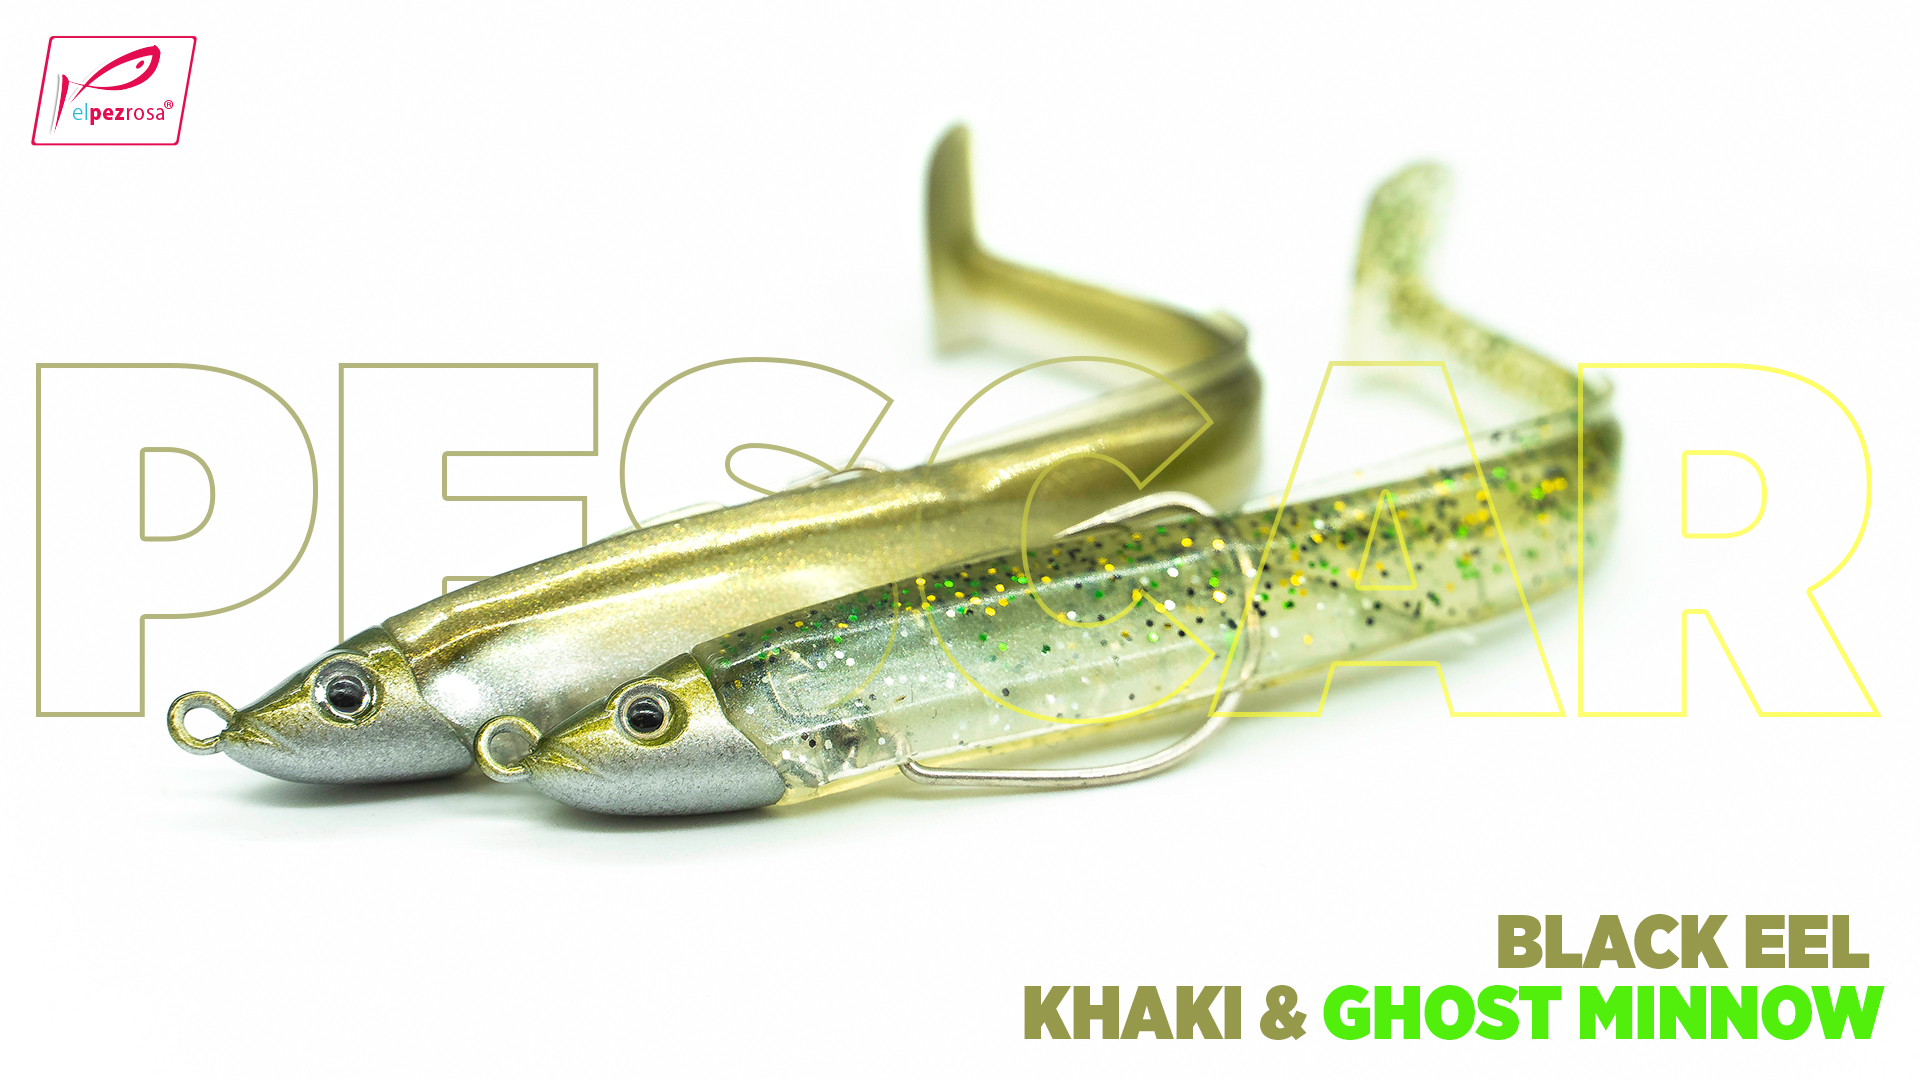 Black Eel de Fiiish: la clave es la velocidad, un señuelo para pescar peces selectivos.